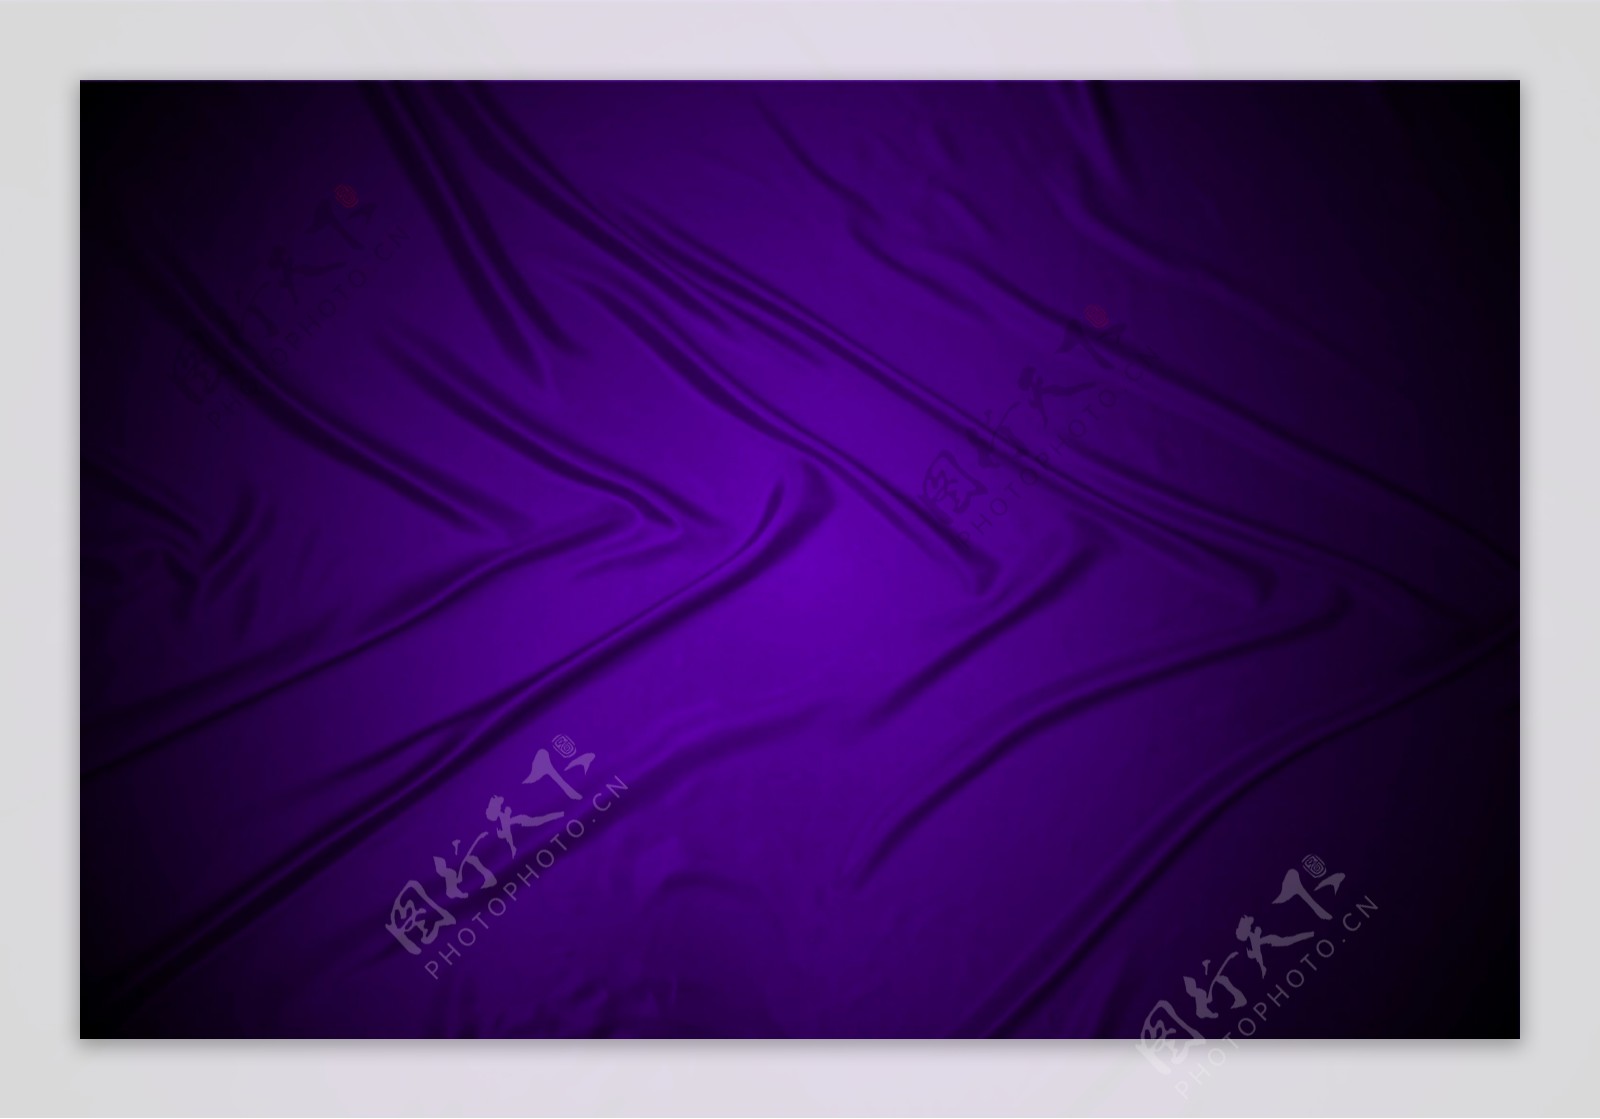 紫色丝绸纹理背景图片